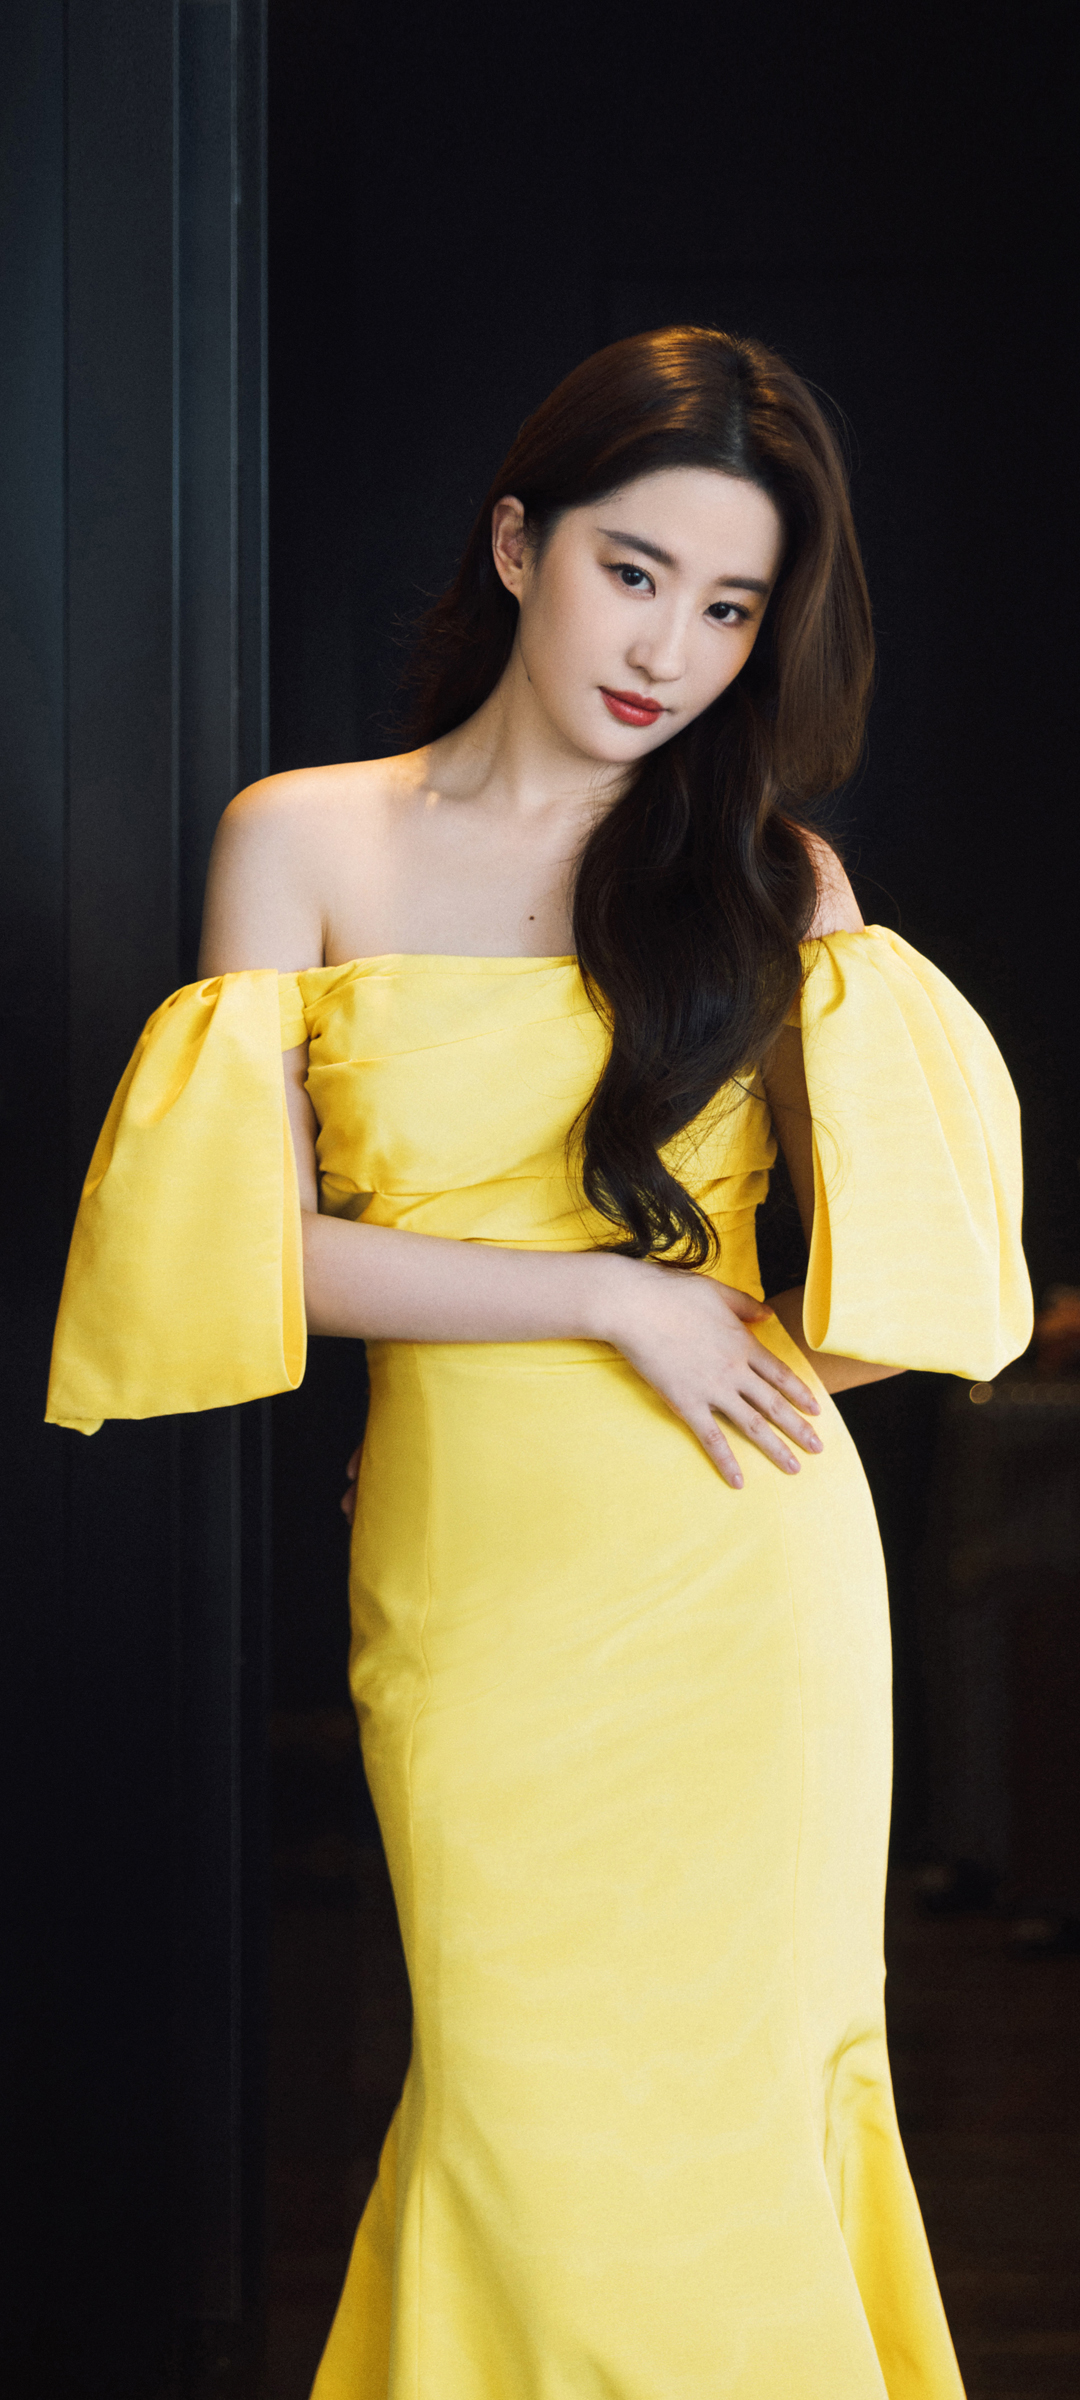 刘亦菲 黄色礼服裙子 美女手机壁纸